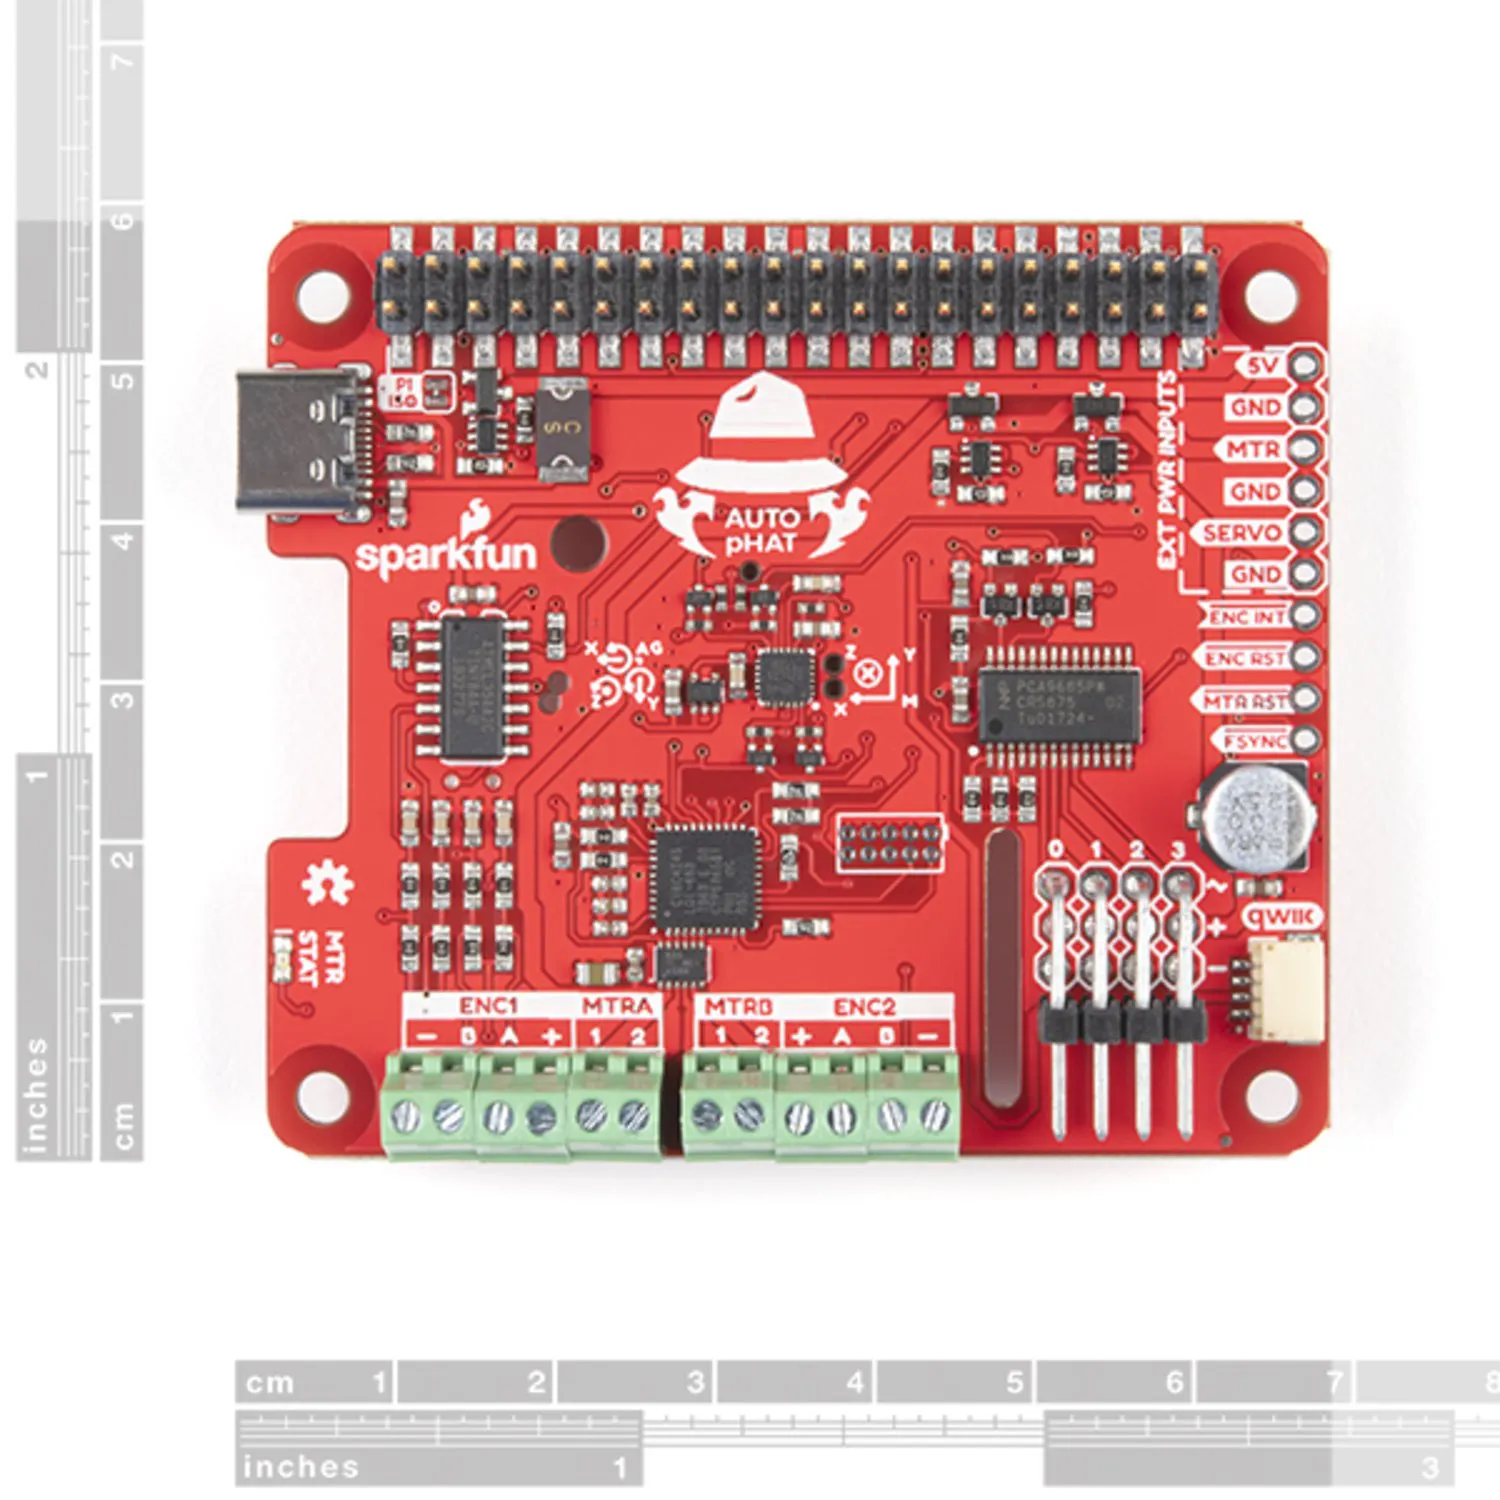 Photo of SparkFun Auto pHAT for Raspberry Pi